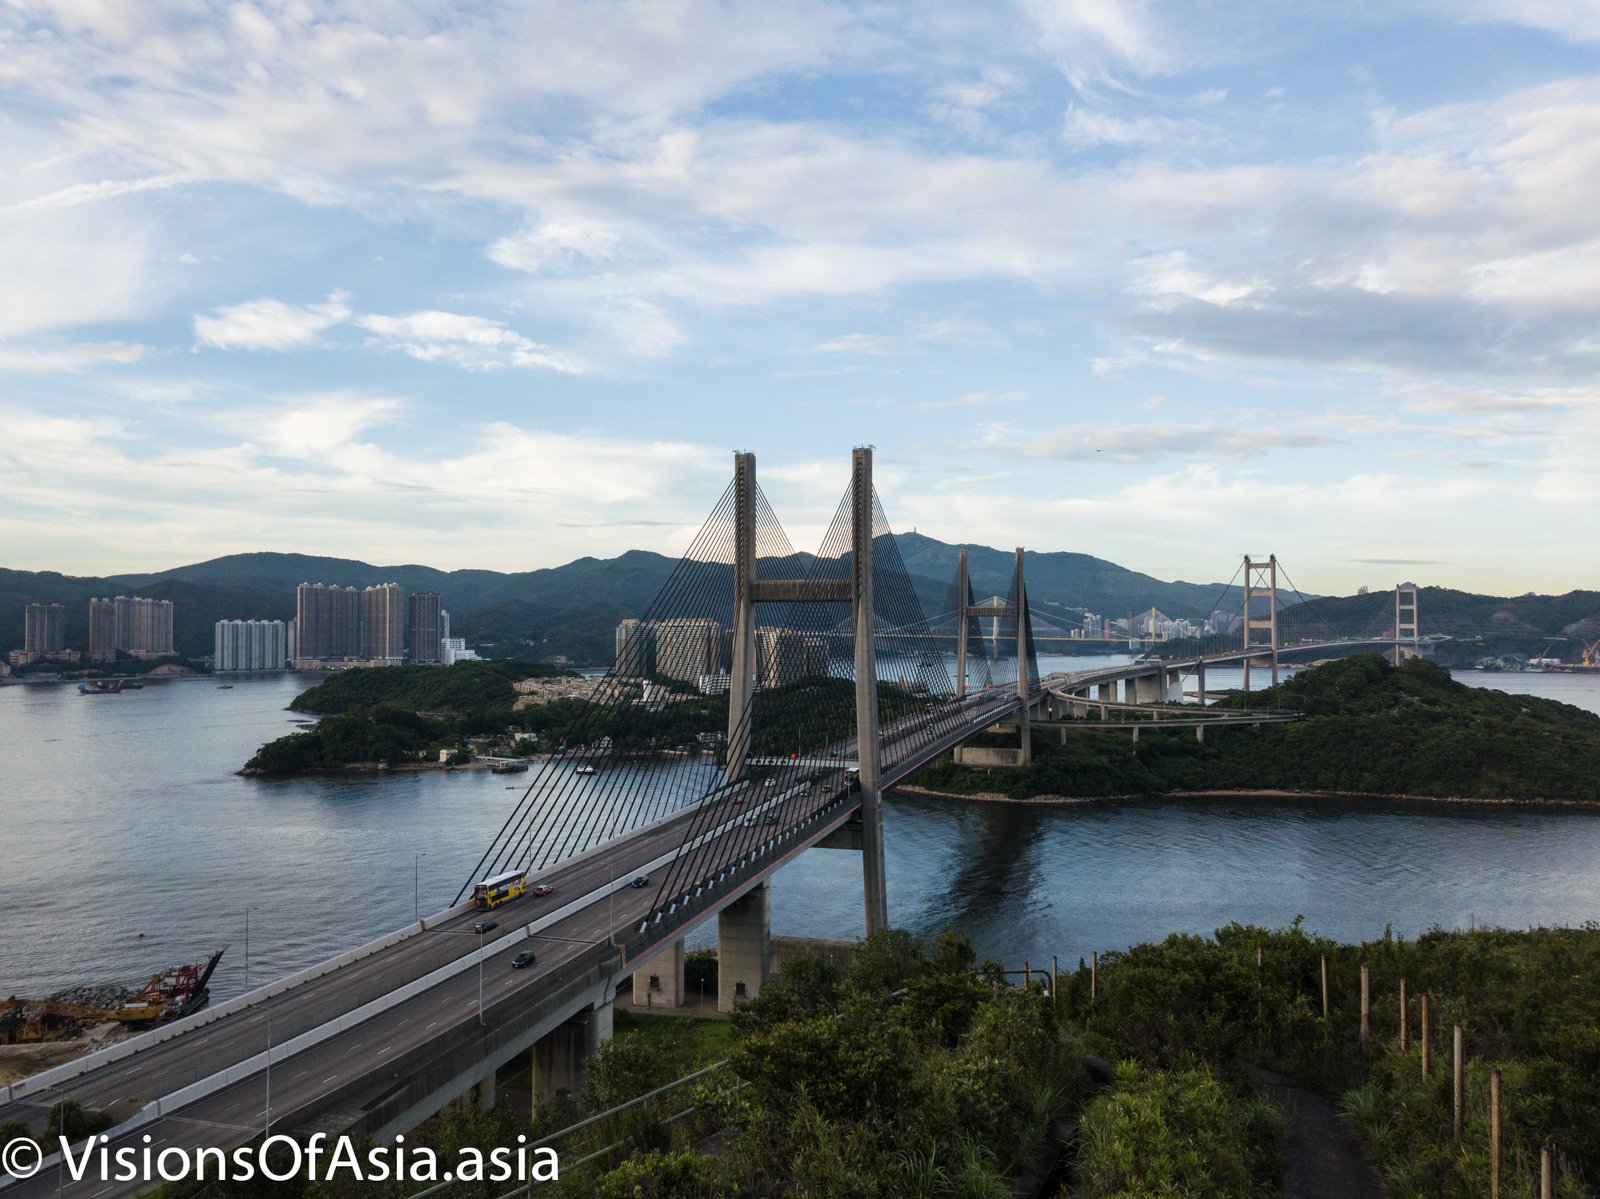 Drone view of Kap Shui Mun bridge